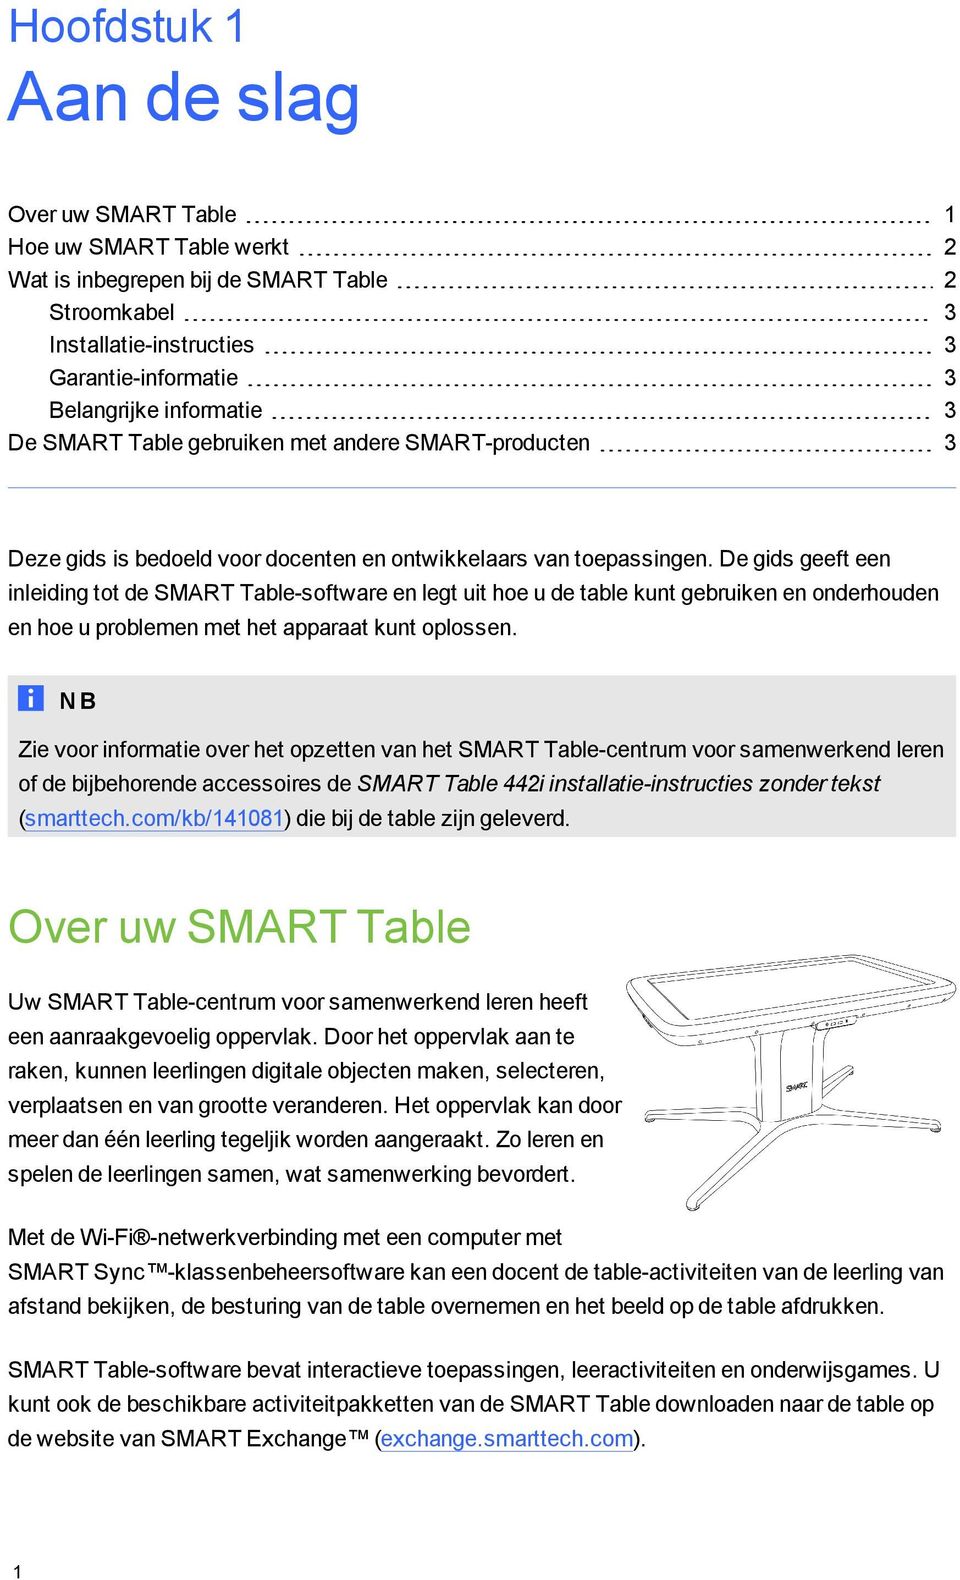 De gids geeft een inleiding tot de SMART Table-software en legt uit hoe u de table kunt gebruiken en onderhouden en hoe u problemen met het apparaat kunt oplossen.